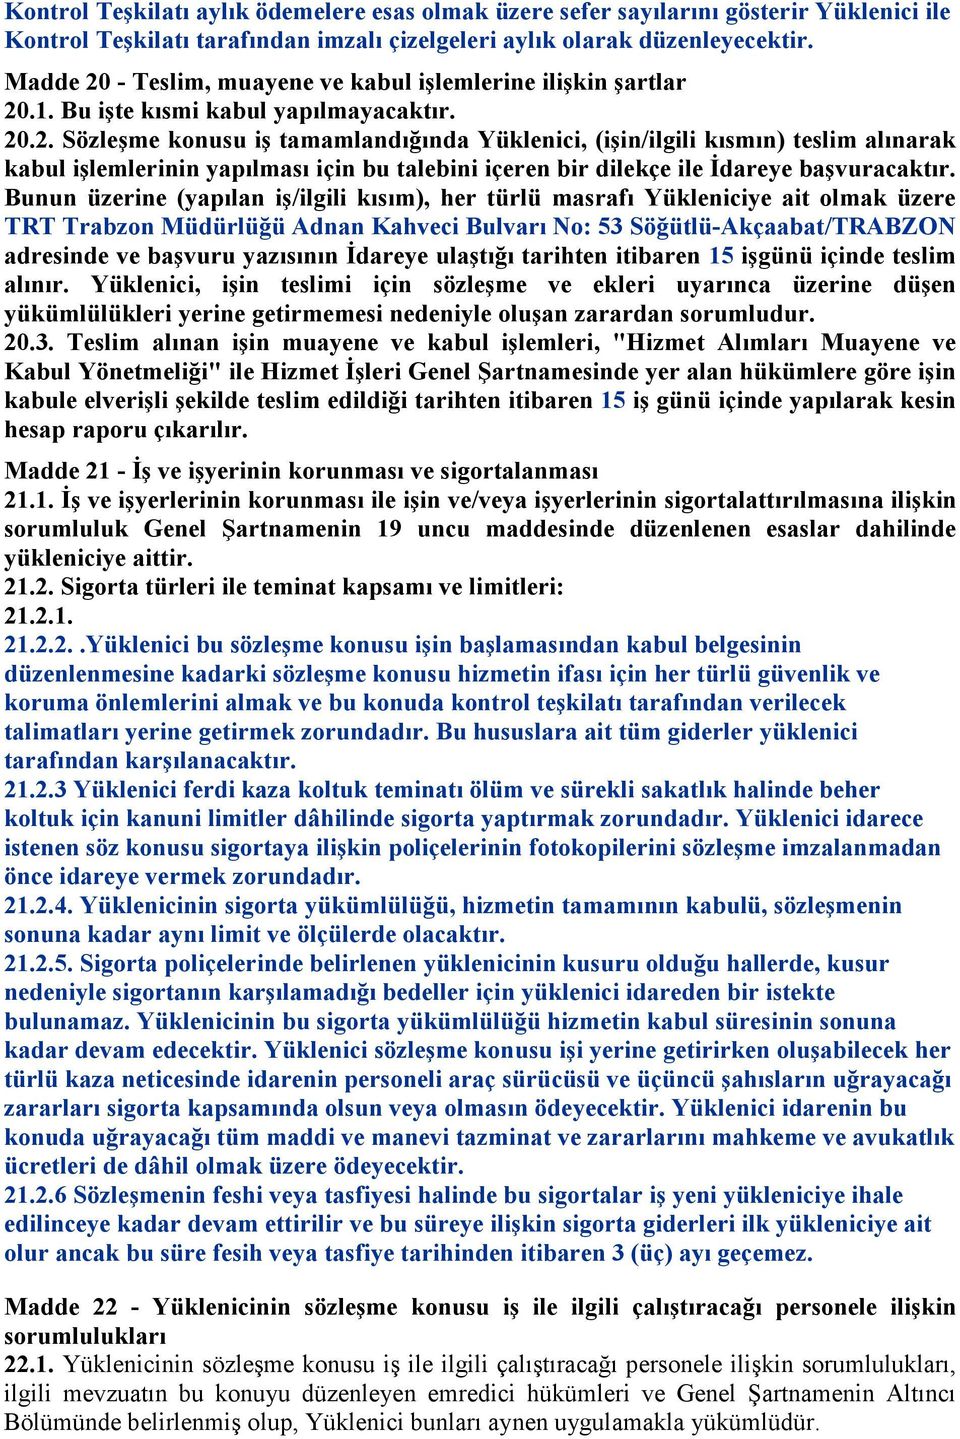 Bunun üzerine (yapılan iş/ilgili kısım), her türlü masrafı Yükleniciye ait olmak üzere TRT Trabzon Müdürlüğü Adnan Kahveci Bulvarı No: 53 Söğütlü-Akçaabat/TRABZON adresinde ve başvuru yazısının